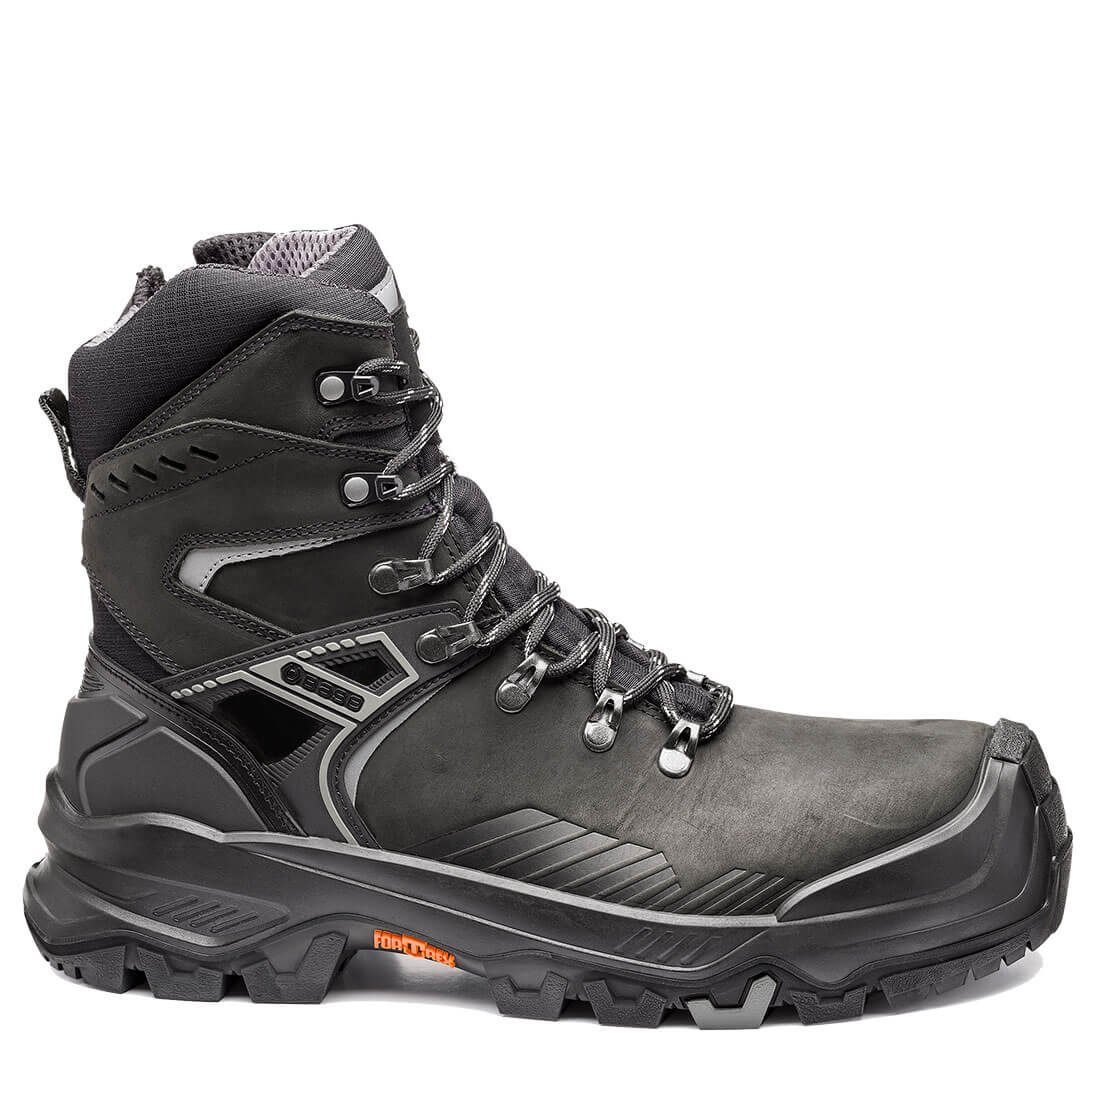 Base Footwear Sicherheitsschuhe B1611 - T-MASSIVE Allroundshoes Sicherheitsschuh Rutchhemmend, Wasserabweisend, Durchtrittsicher, Wärmeisolierend, Kälteisoliert